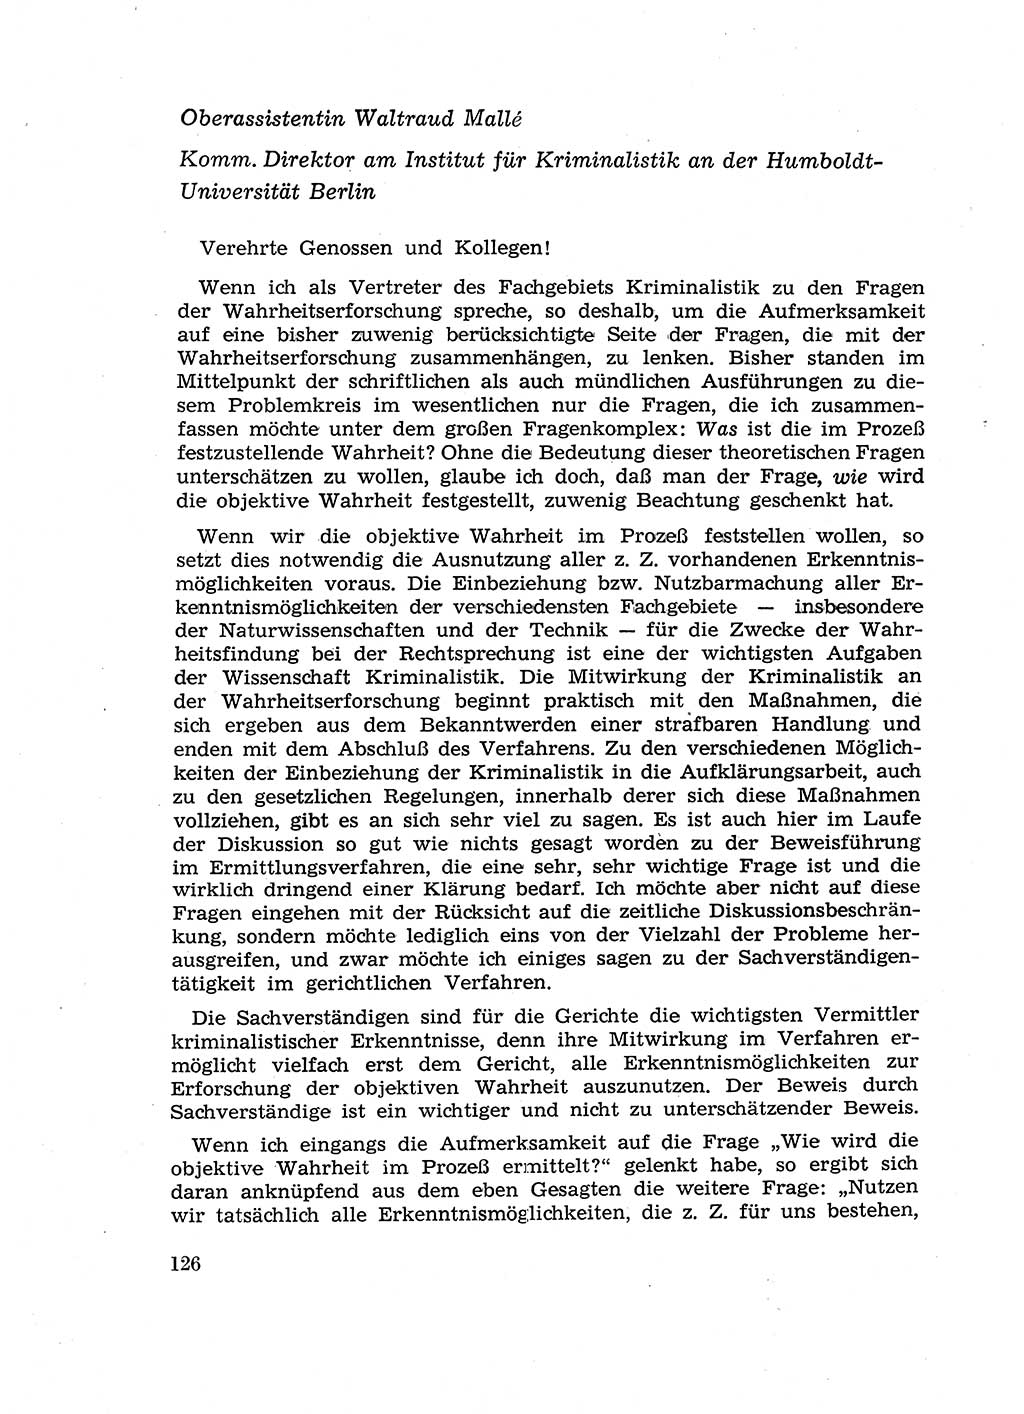 Fragen des Beweisrechts im Strafprozess [Deutsche Demokratische Republik (DDR)] 1956, Seite 126 (Fr. BeweisR. Str.-Proz. DDR 1956, S. 126)